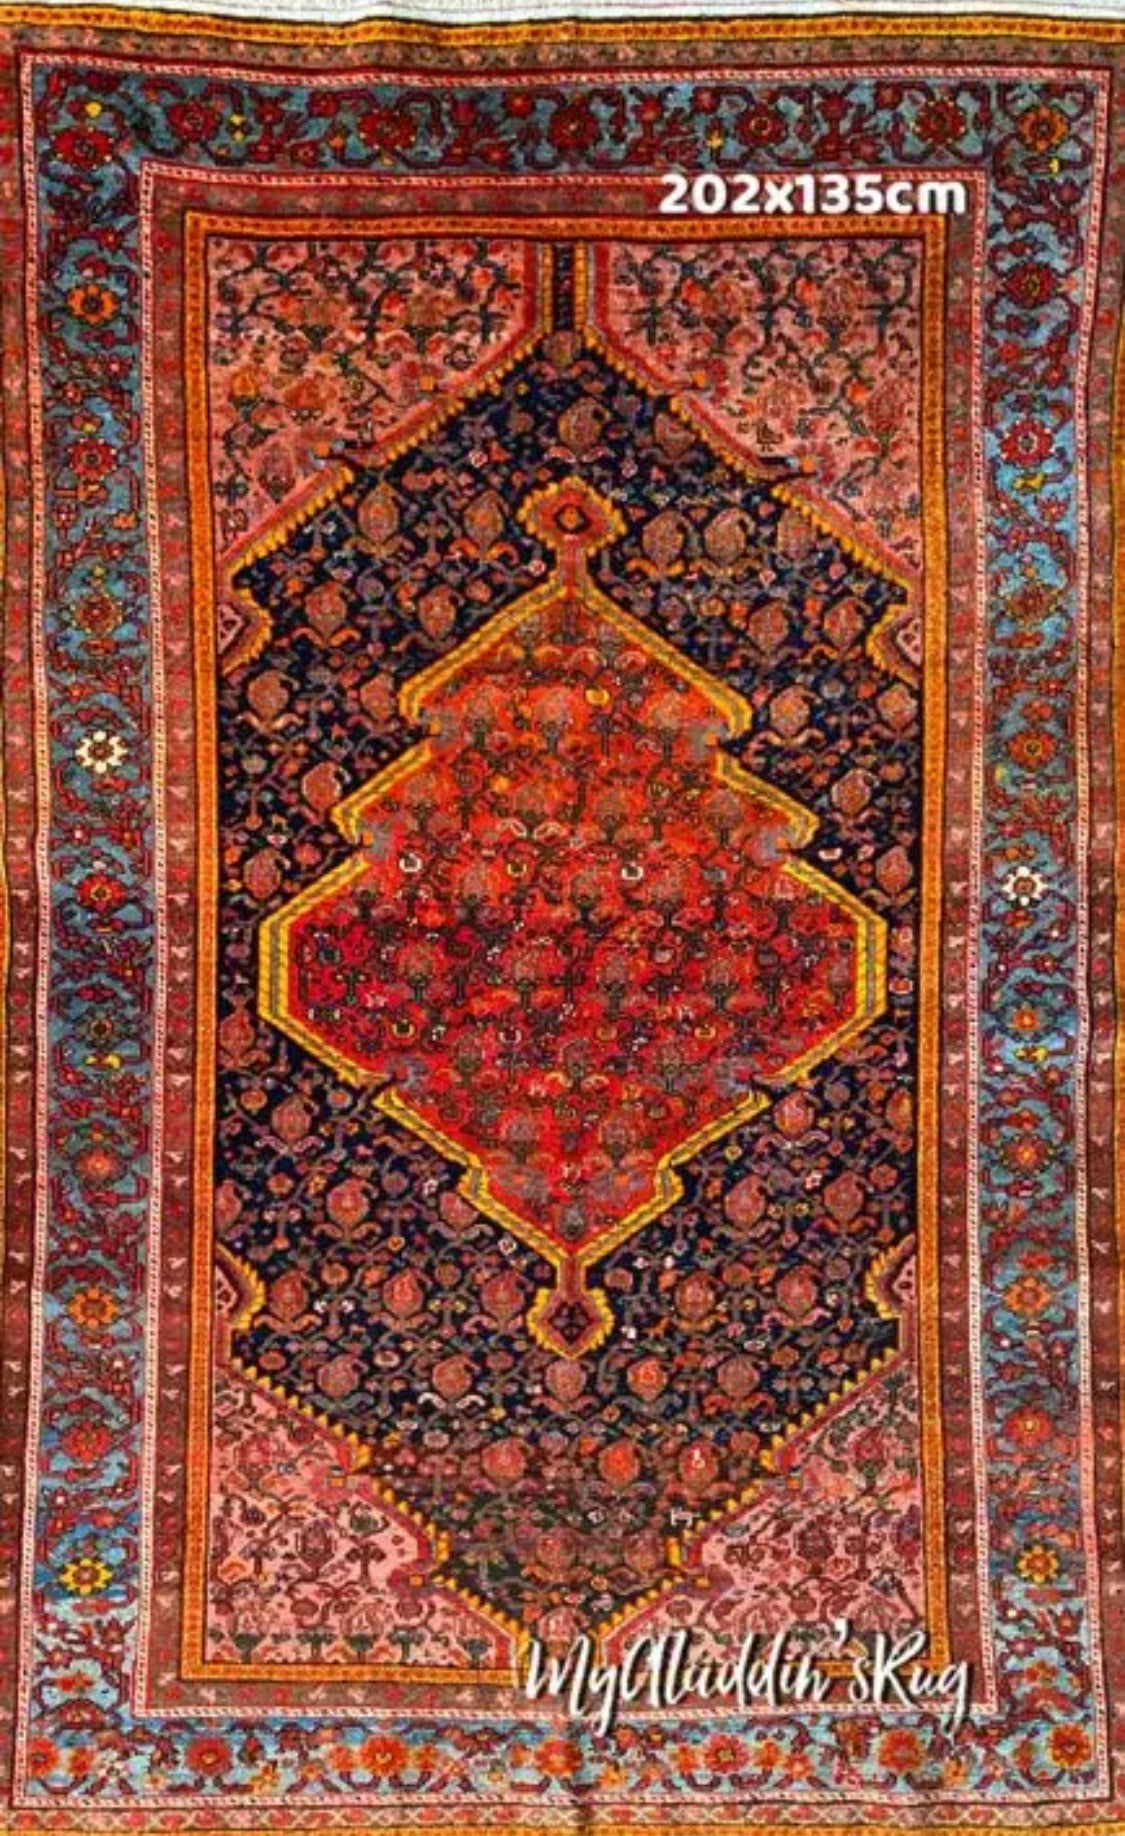 ミシャン マライヤー ペルシャ絨毯 202×135cm